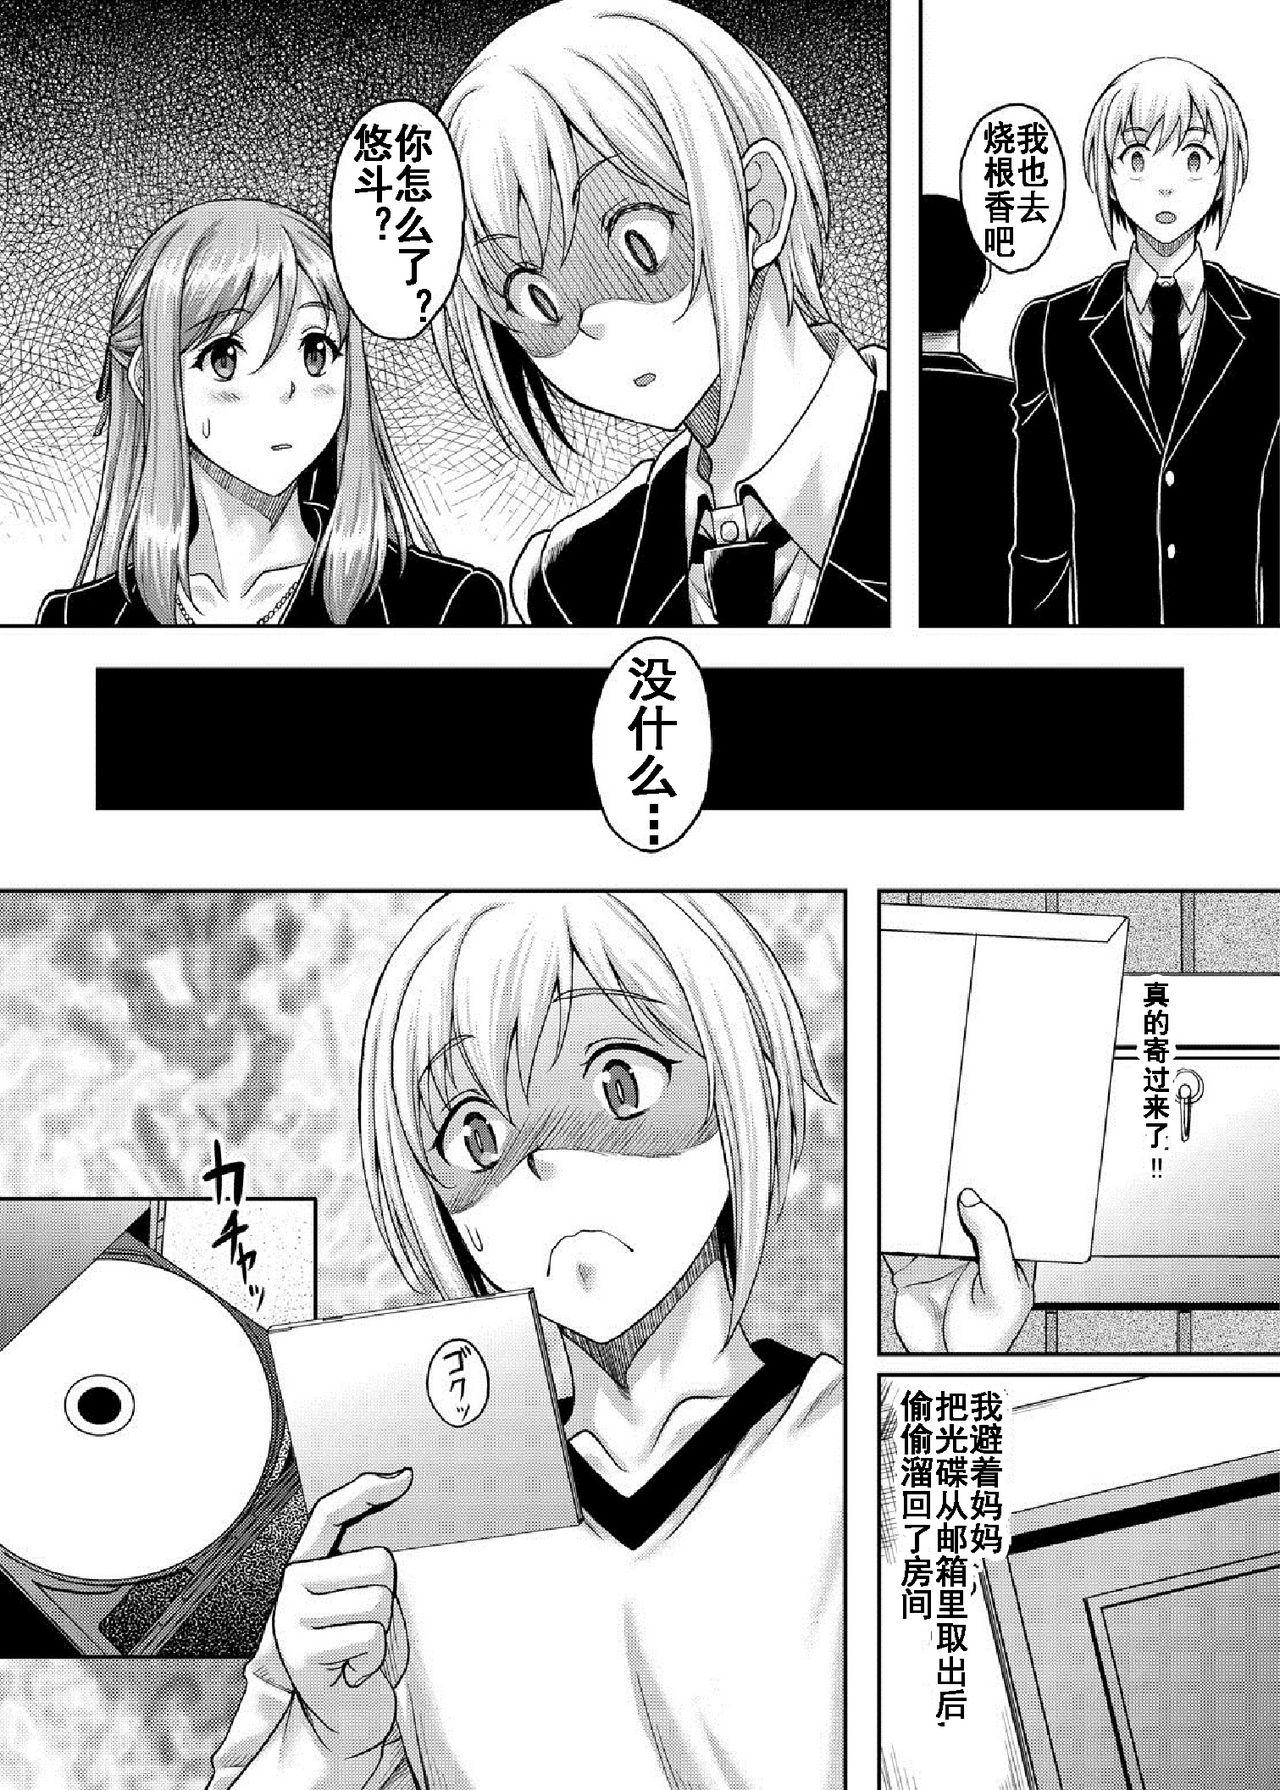 Tease Ureta Karada o Moteamashita Miboujin to Sokuhame Dekiru SNS ga Arutte Hontou desu ka? 2 - Original Sharing - Page 6